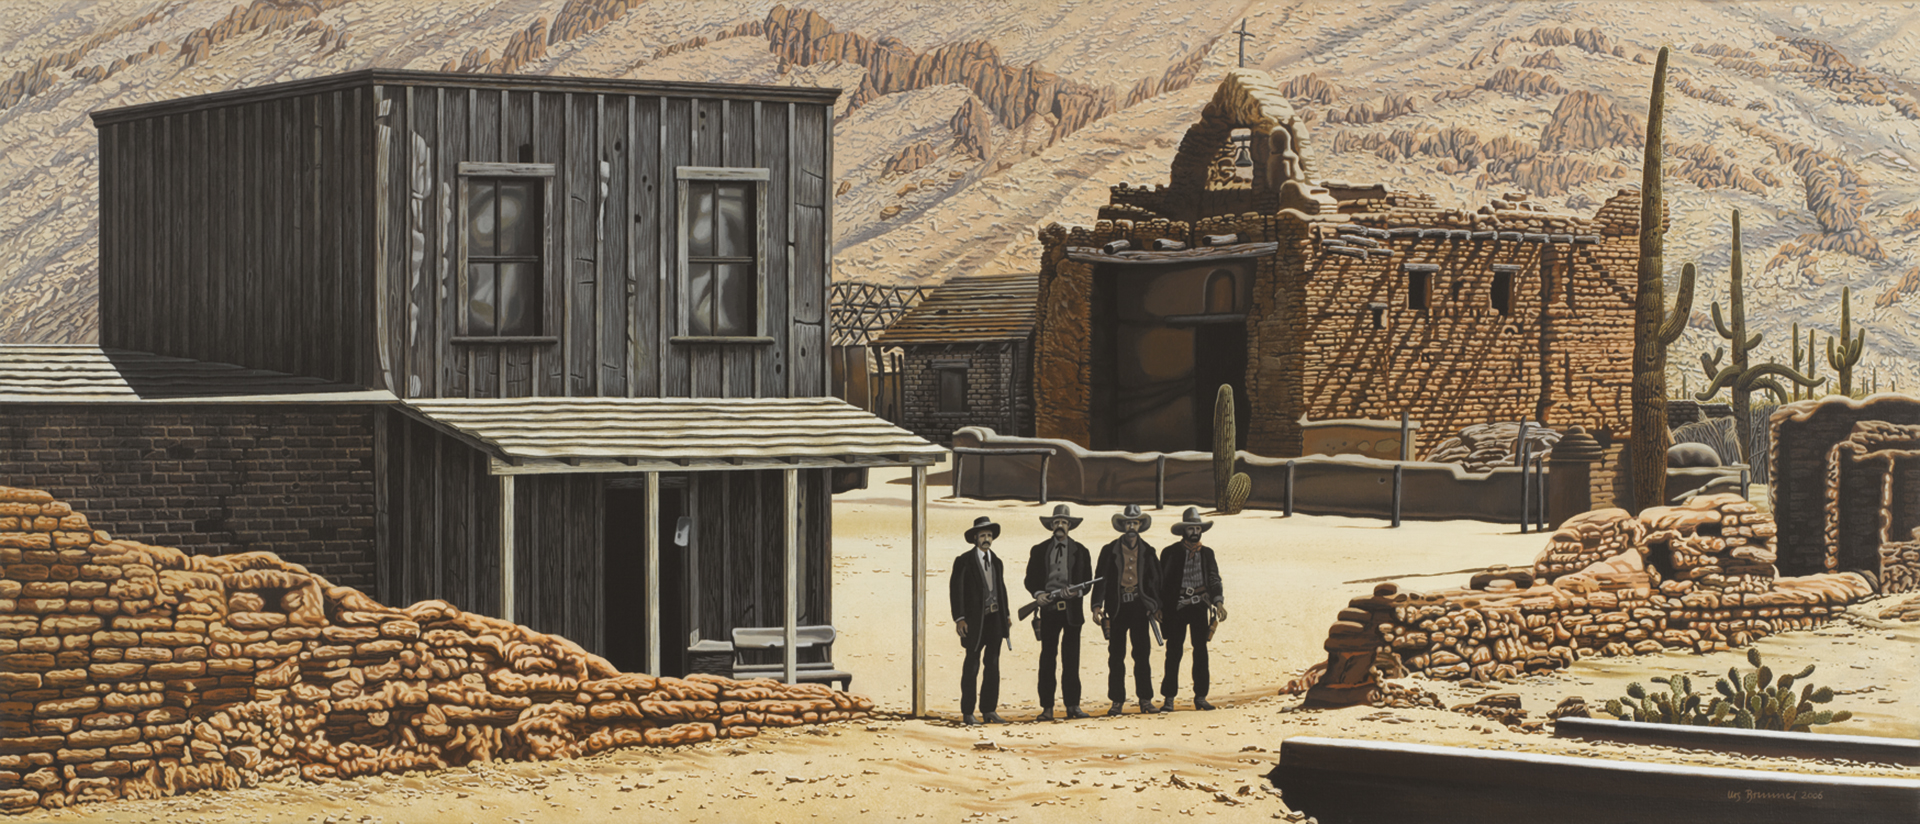 Western, 2006, Acryl auf Leinwand, 60 x 140 cm